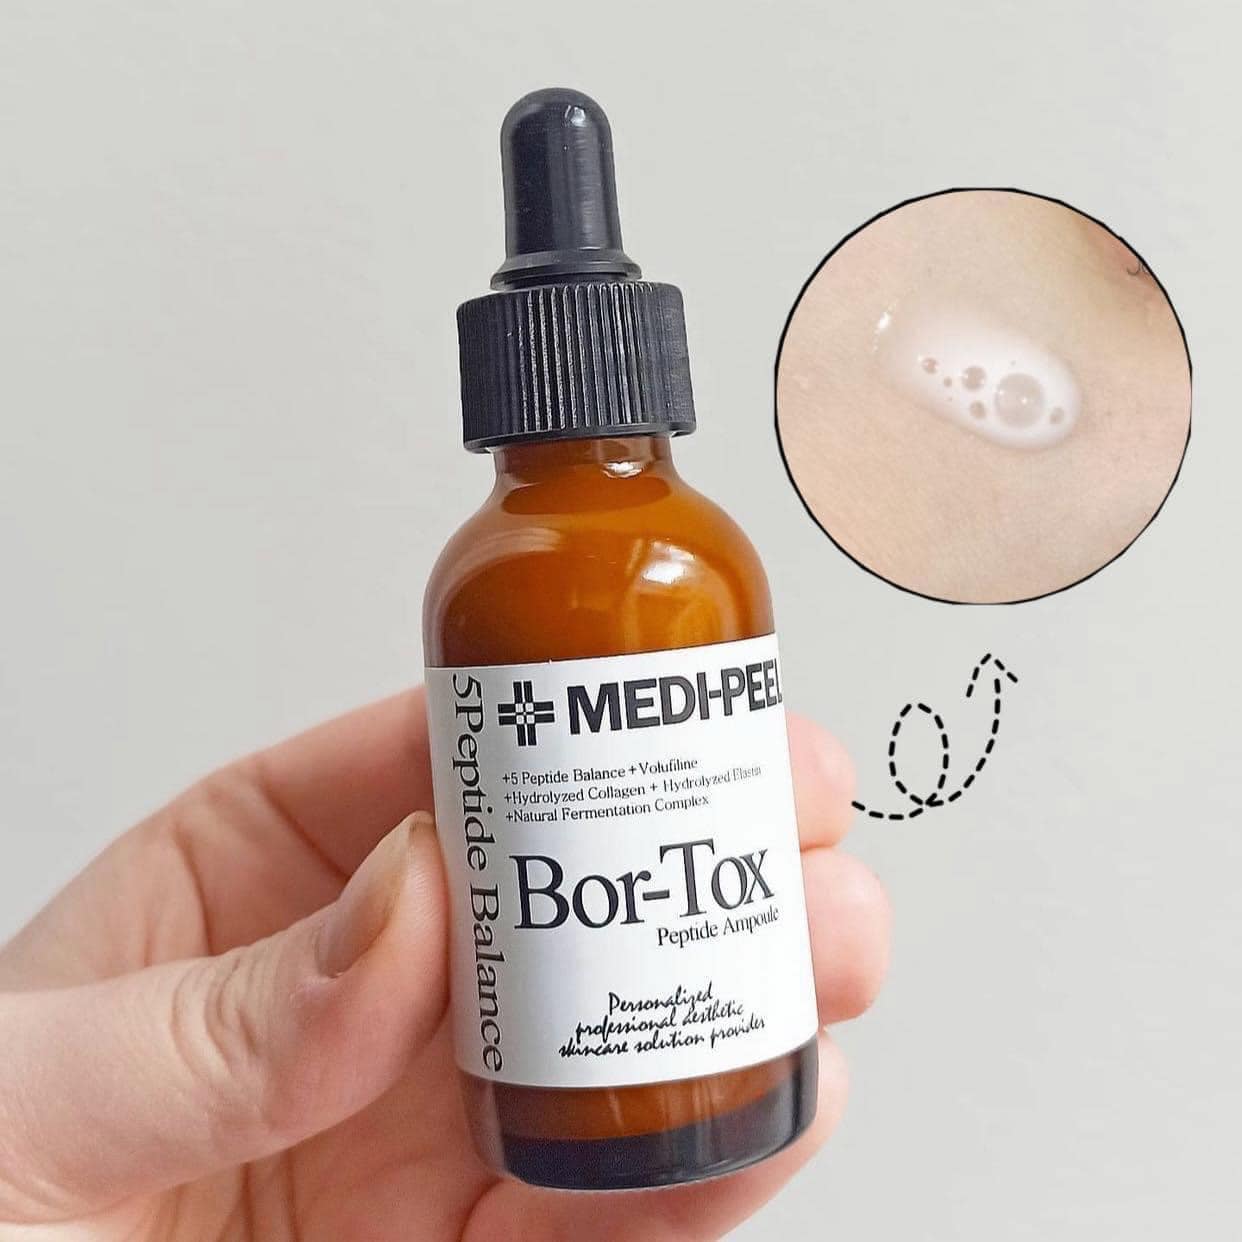 Tinh chất hỗ trợ ngăn ngừa lão hóa Bor-Tox Medipeel